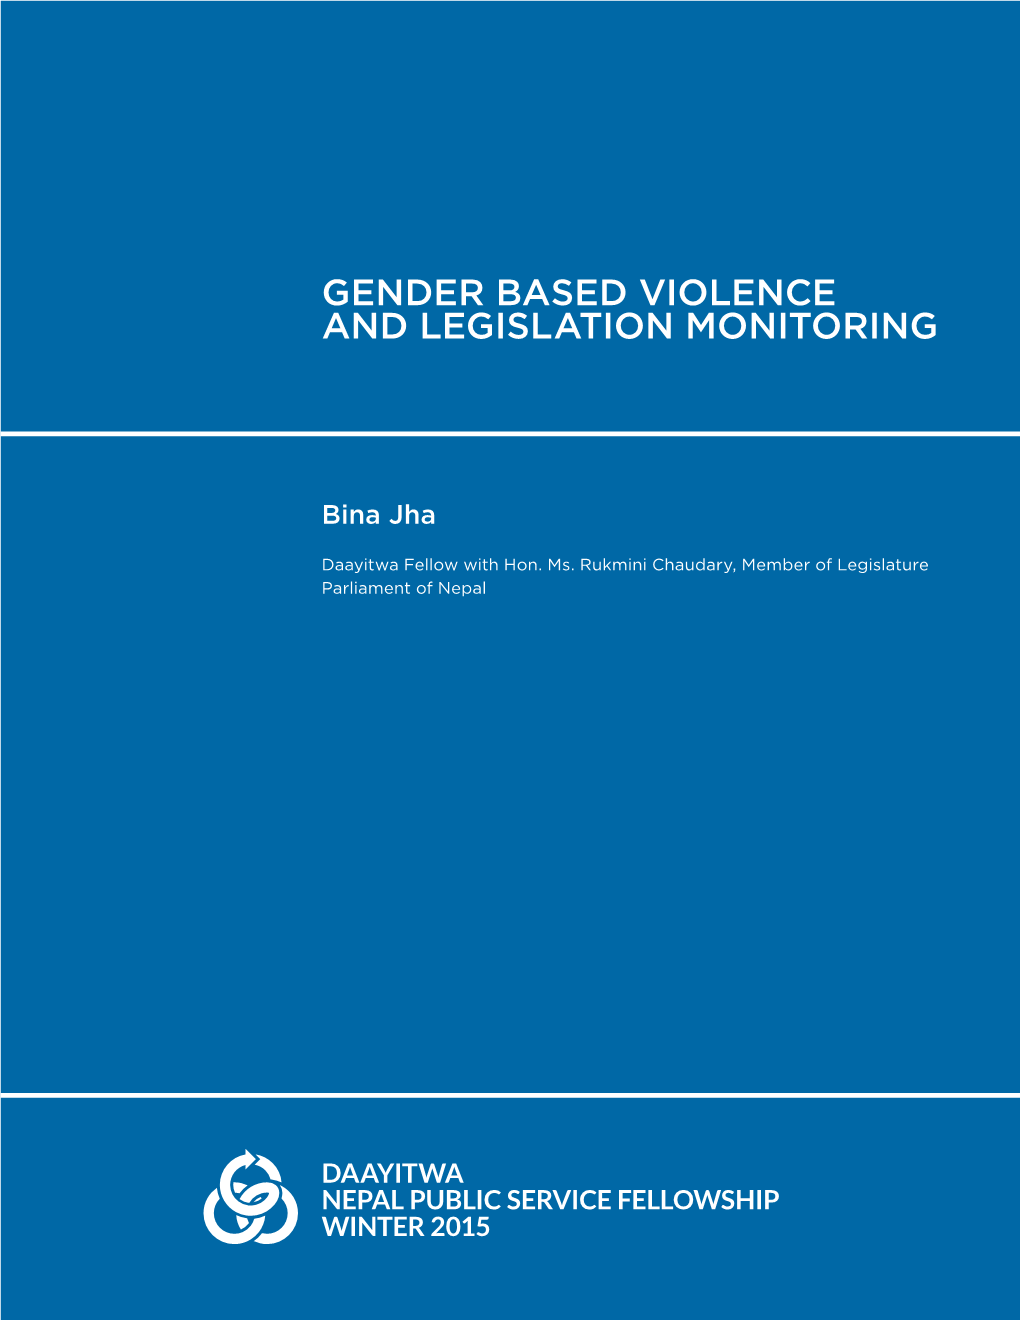 Gender Based Violence and Legislation Monitoring